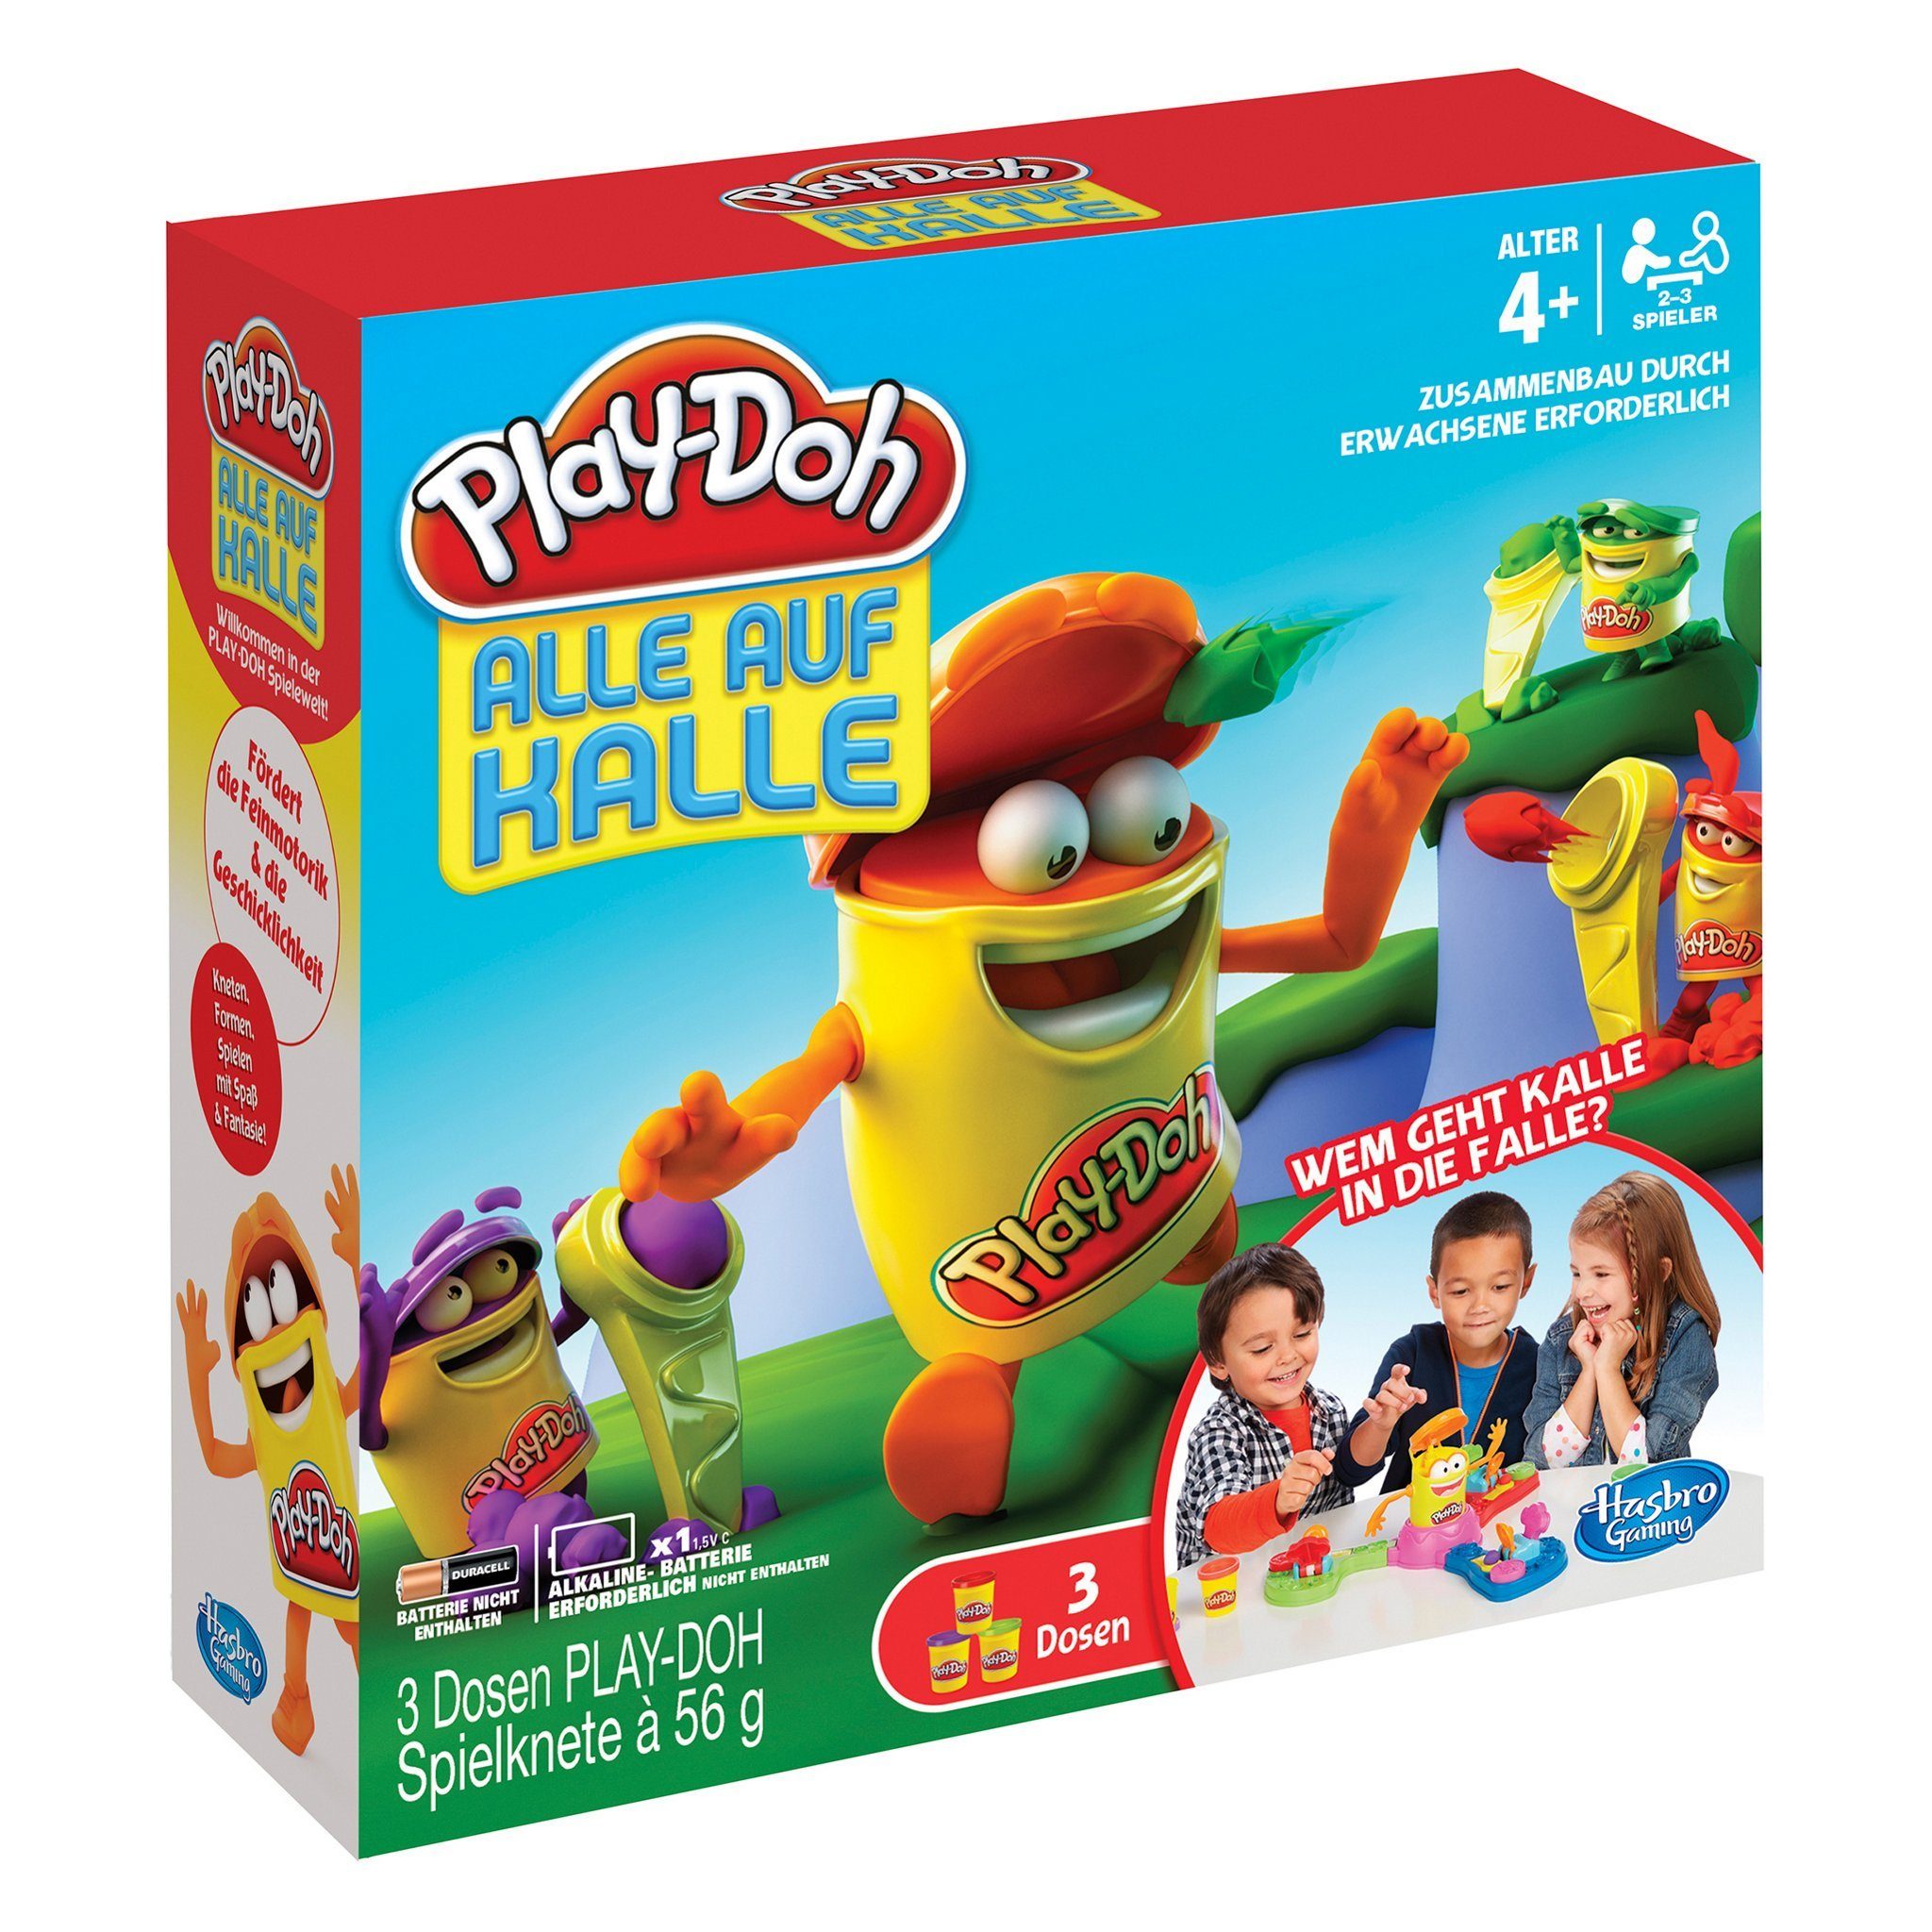 Hasbro Spiel, Gesellschaftsspiel Alle auf Kalle Kinderspiel, Von den Machern von Looping-Louie: Play-Doh jetzt als Spiel! Mithilfe